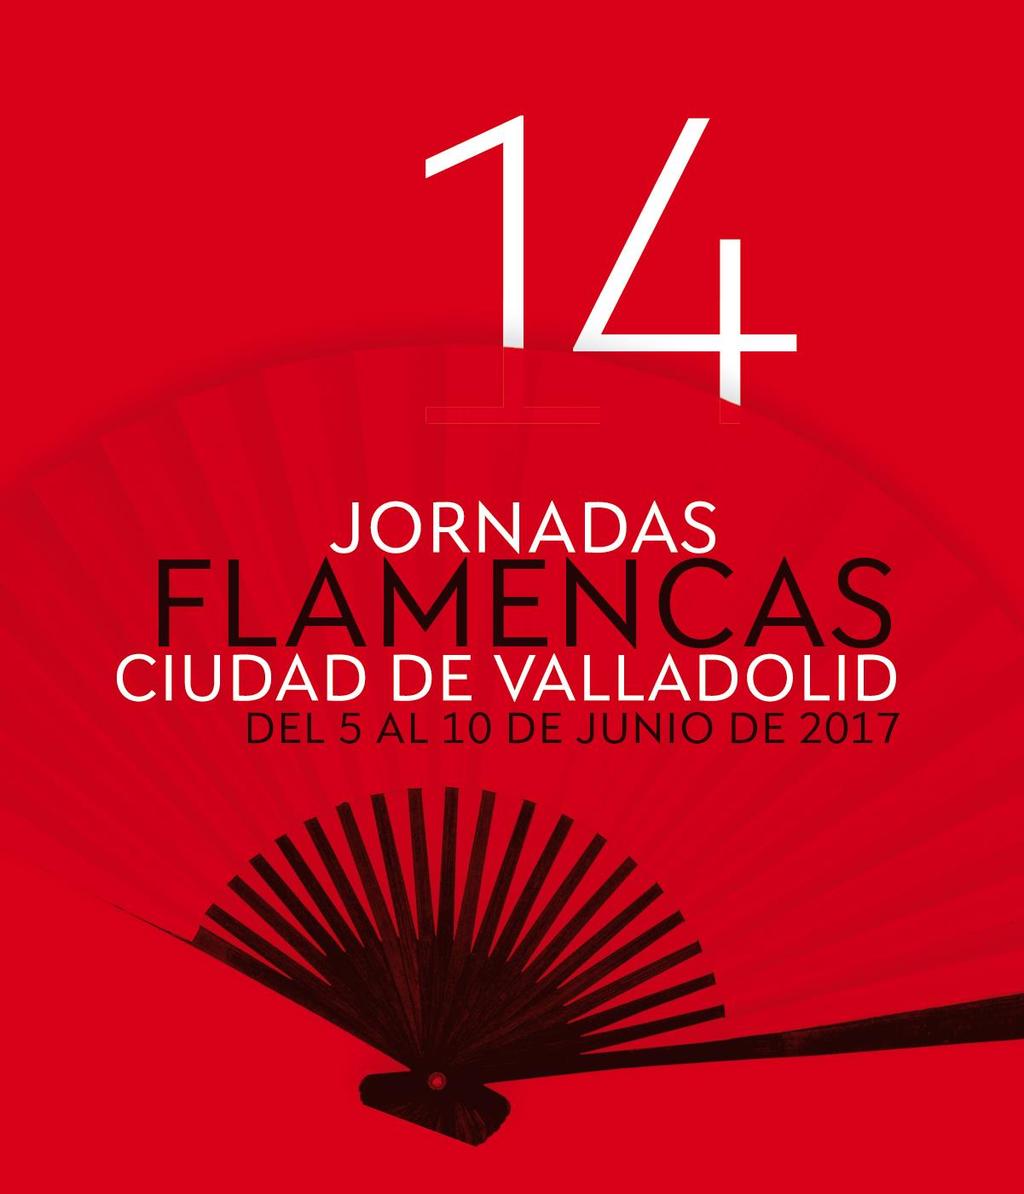 14 JORNADAS FLAMENCAS CIUDAD DE VALLADOLID Monográficas al Festival Internacional del